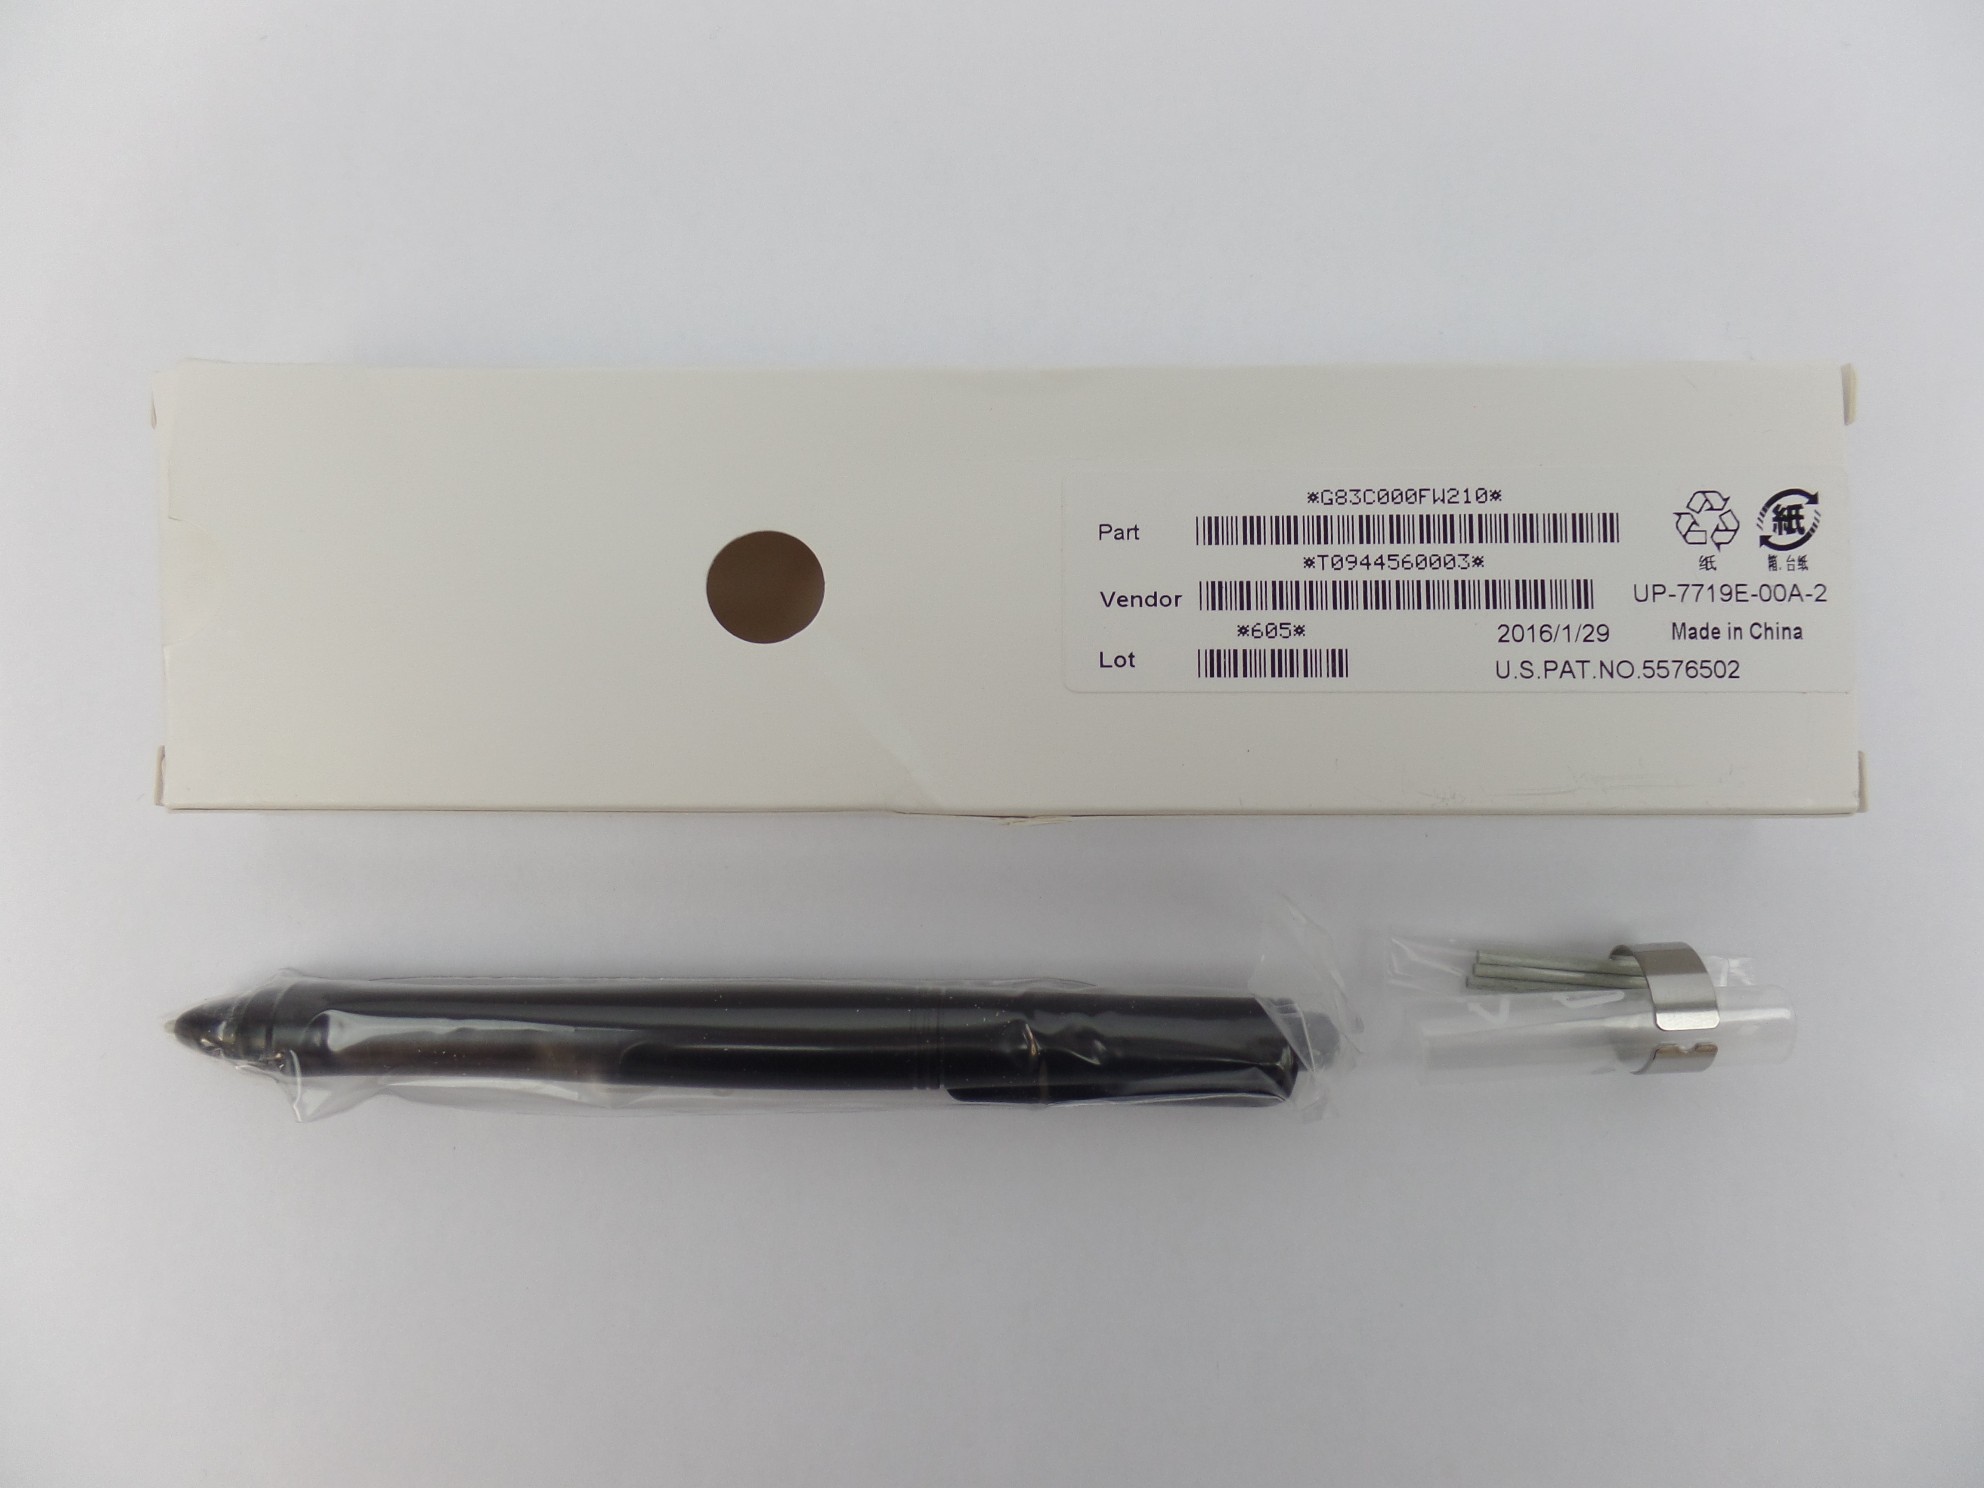 OEM Genuine Stylus Pen for Toshiba Portege Z20t PT15CU-00700N G83C000FW210